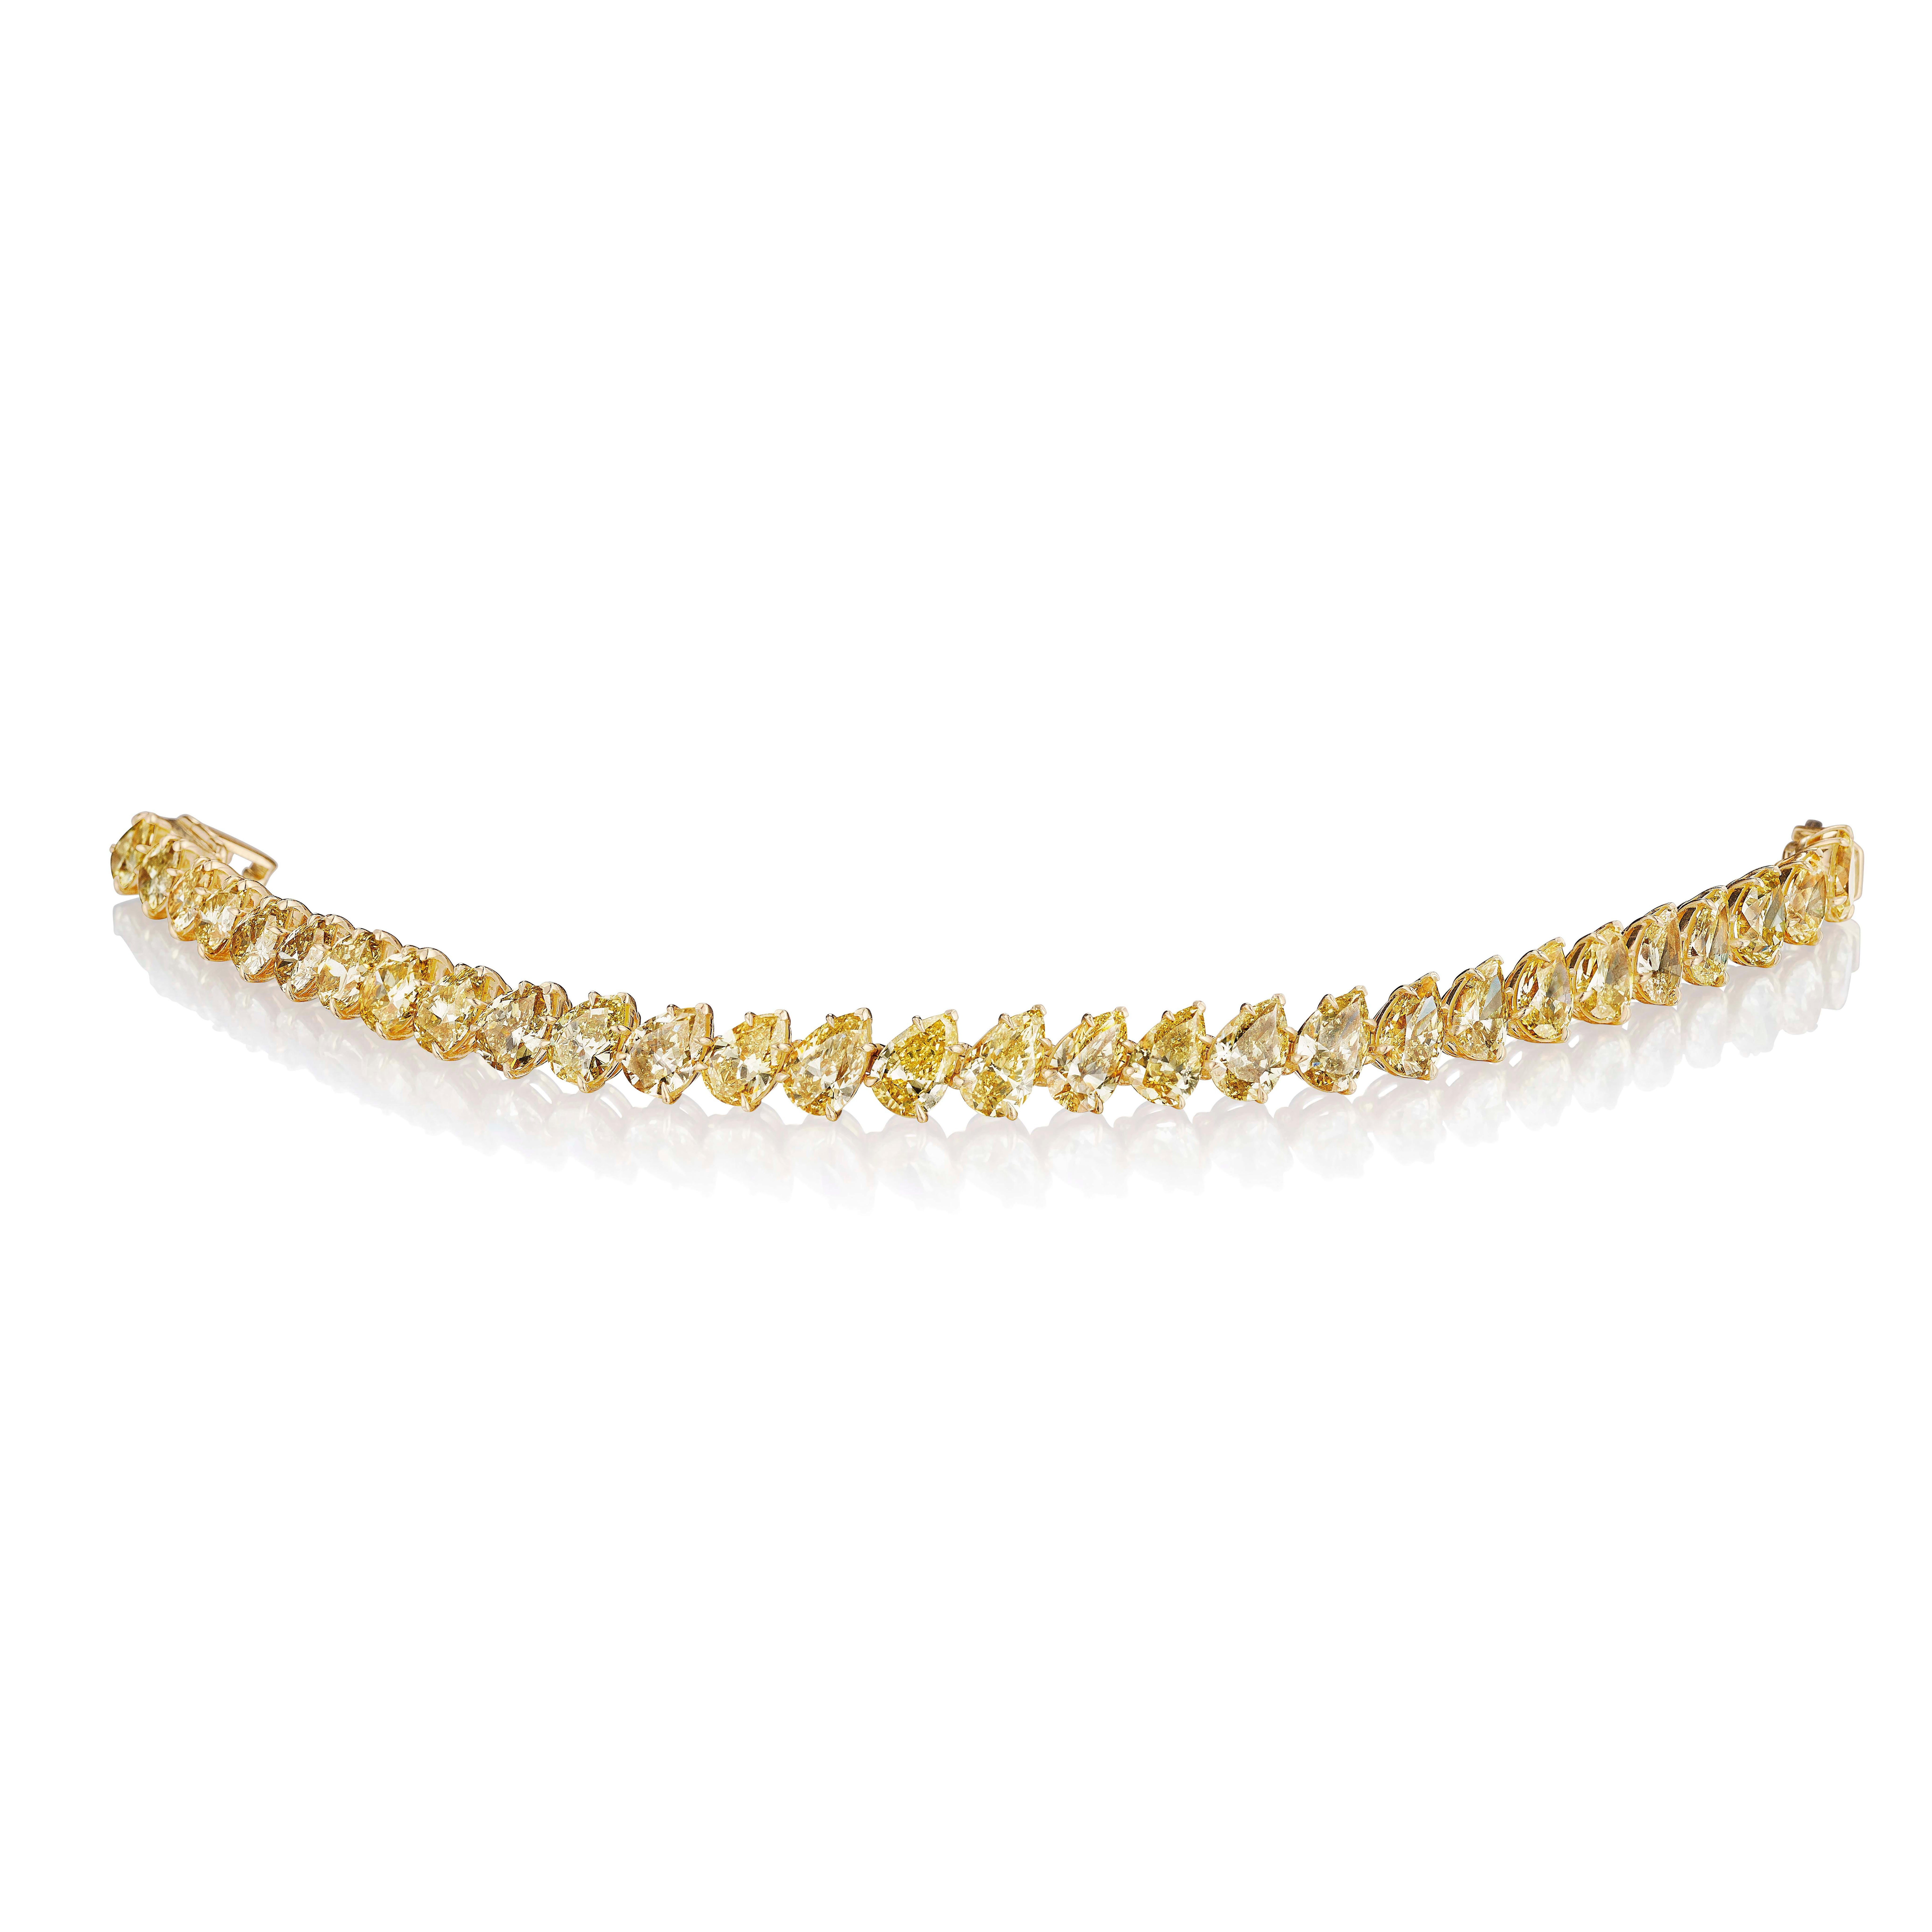 Dieses wunderschöne Tennisarmband besteht aus 28 perfekt aufeinander abgestimmten gelben birnenförmigen Diamanten, die in einem Winkel gefasst sind und einen sehr eleganten und raffinierten Look ergeben.
Messen Sie 6,5 Zoll.
Fassung aus 18 Karat